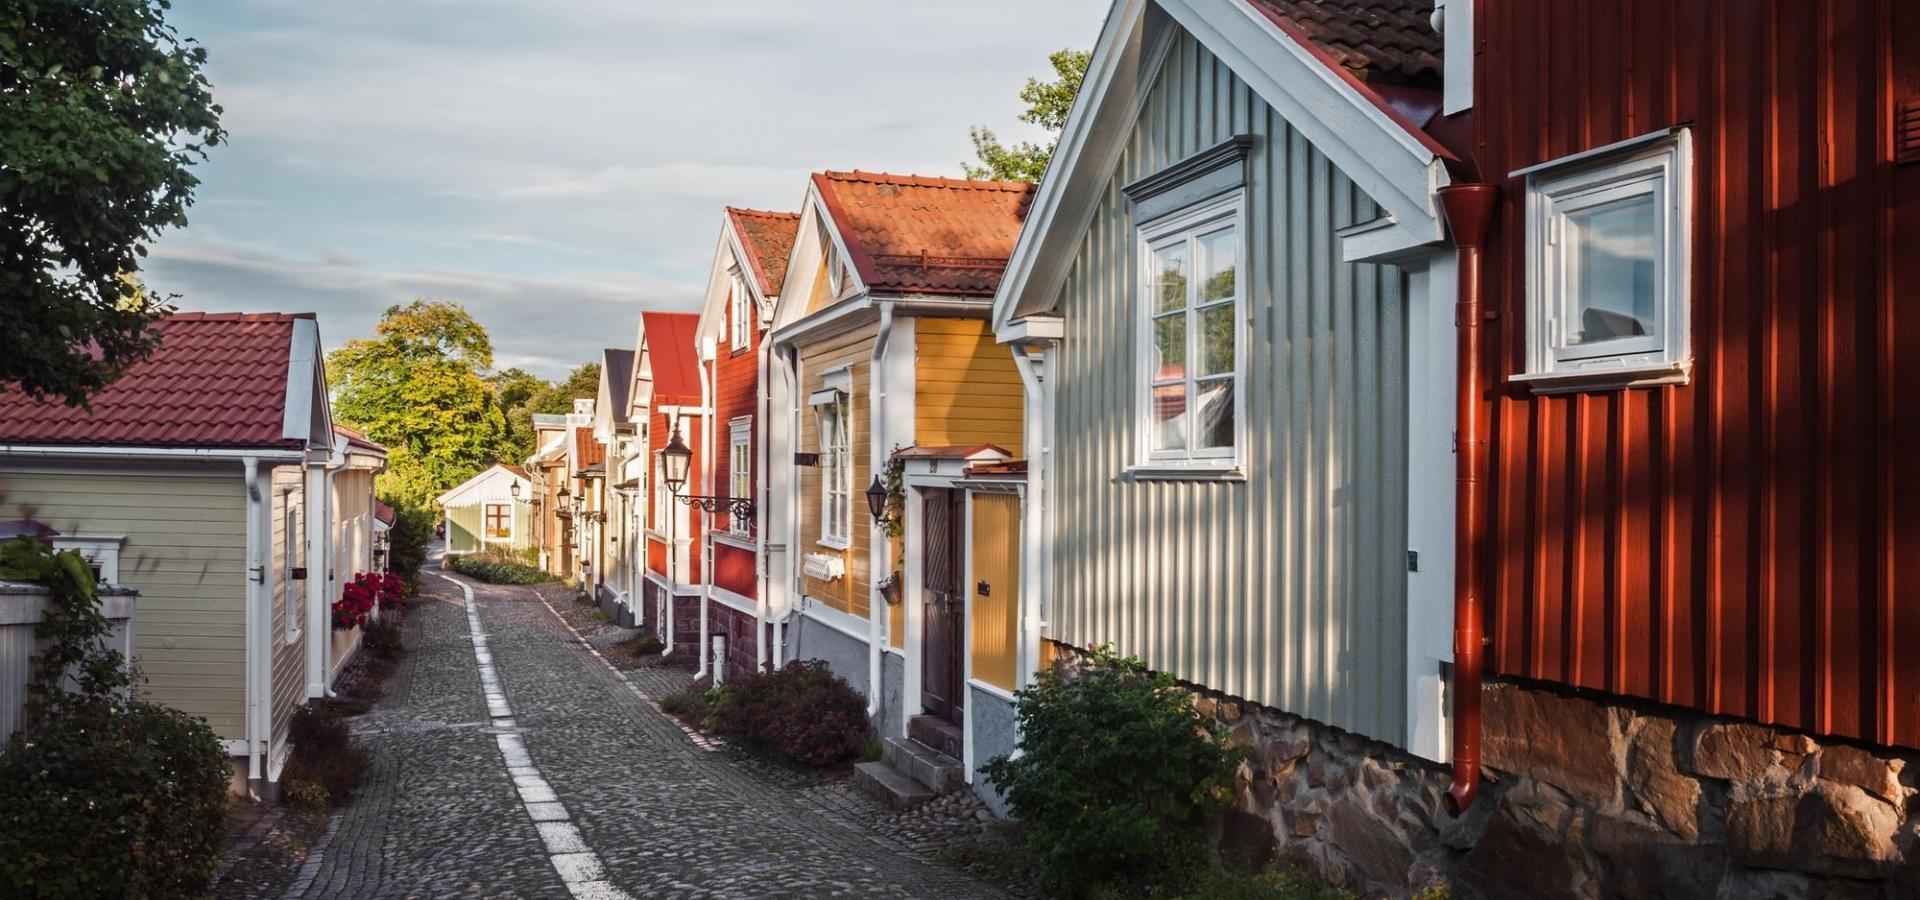 Zwischen pastellfarbenen Holzhäusern erstreckt sich eine Kopfsteinpflasterstraße.